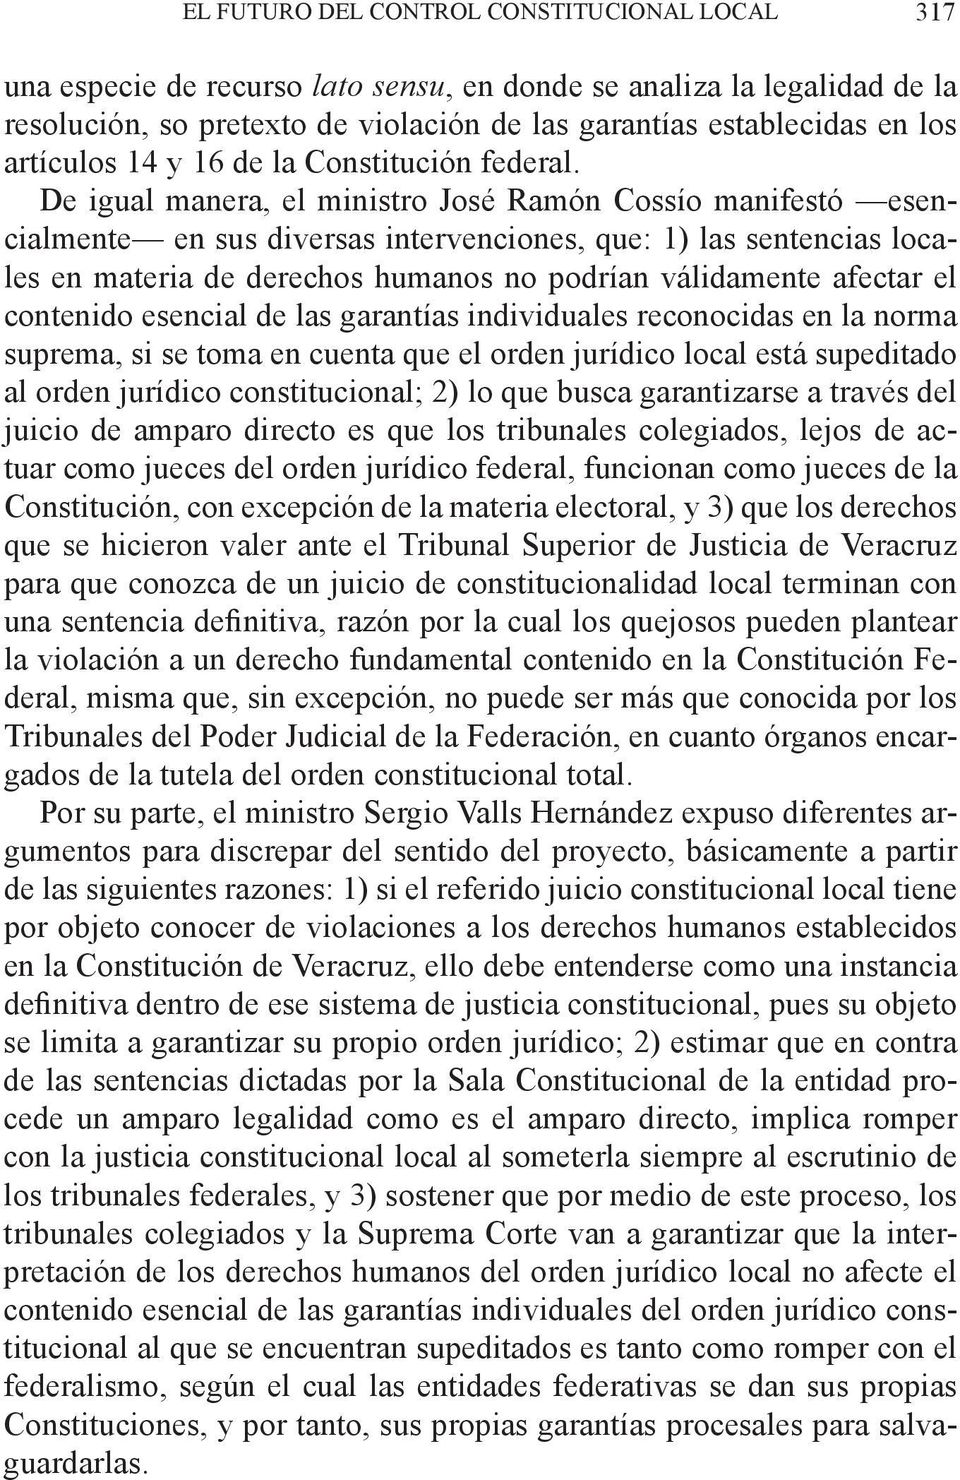 De igual manera, el ministro José Ramón Cossío manifestó esencialmente en sus diversas intervenciones, que: 1) las sentencias locales en materia de derechos humanos no podrían válidamente afectar el